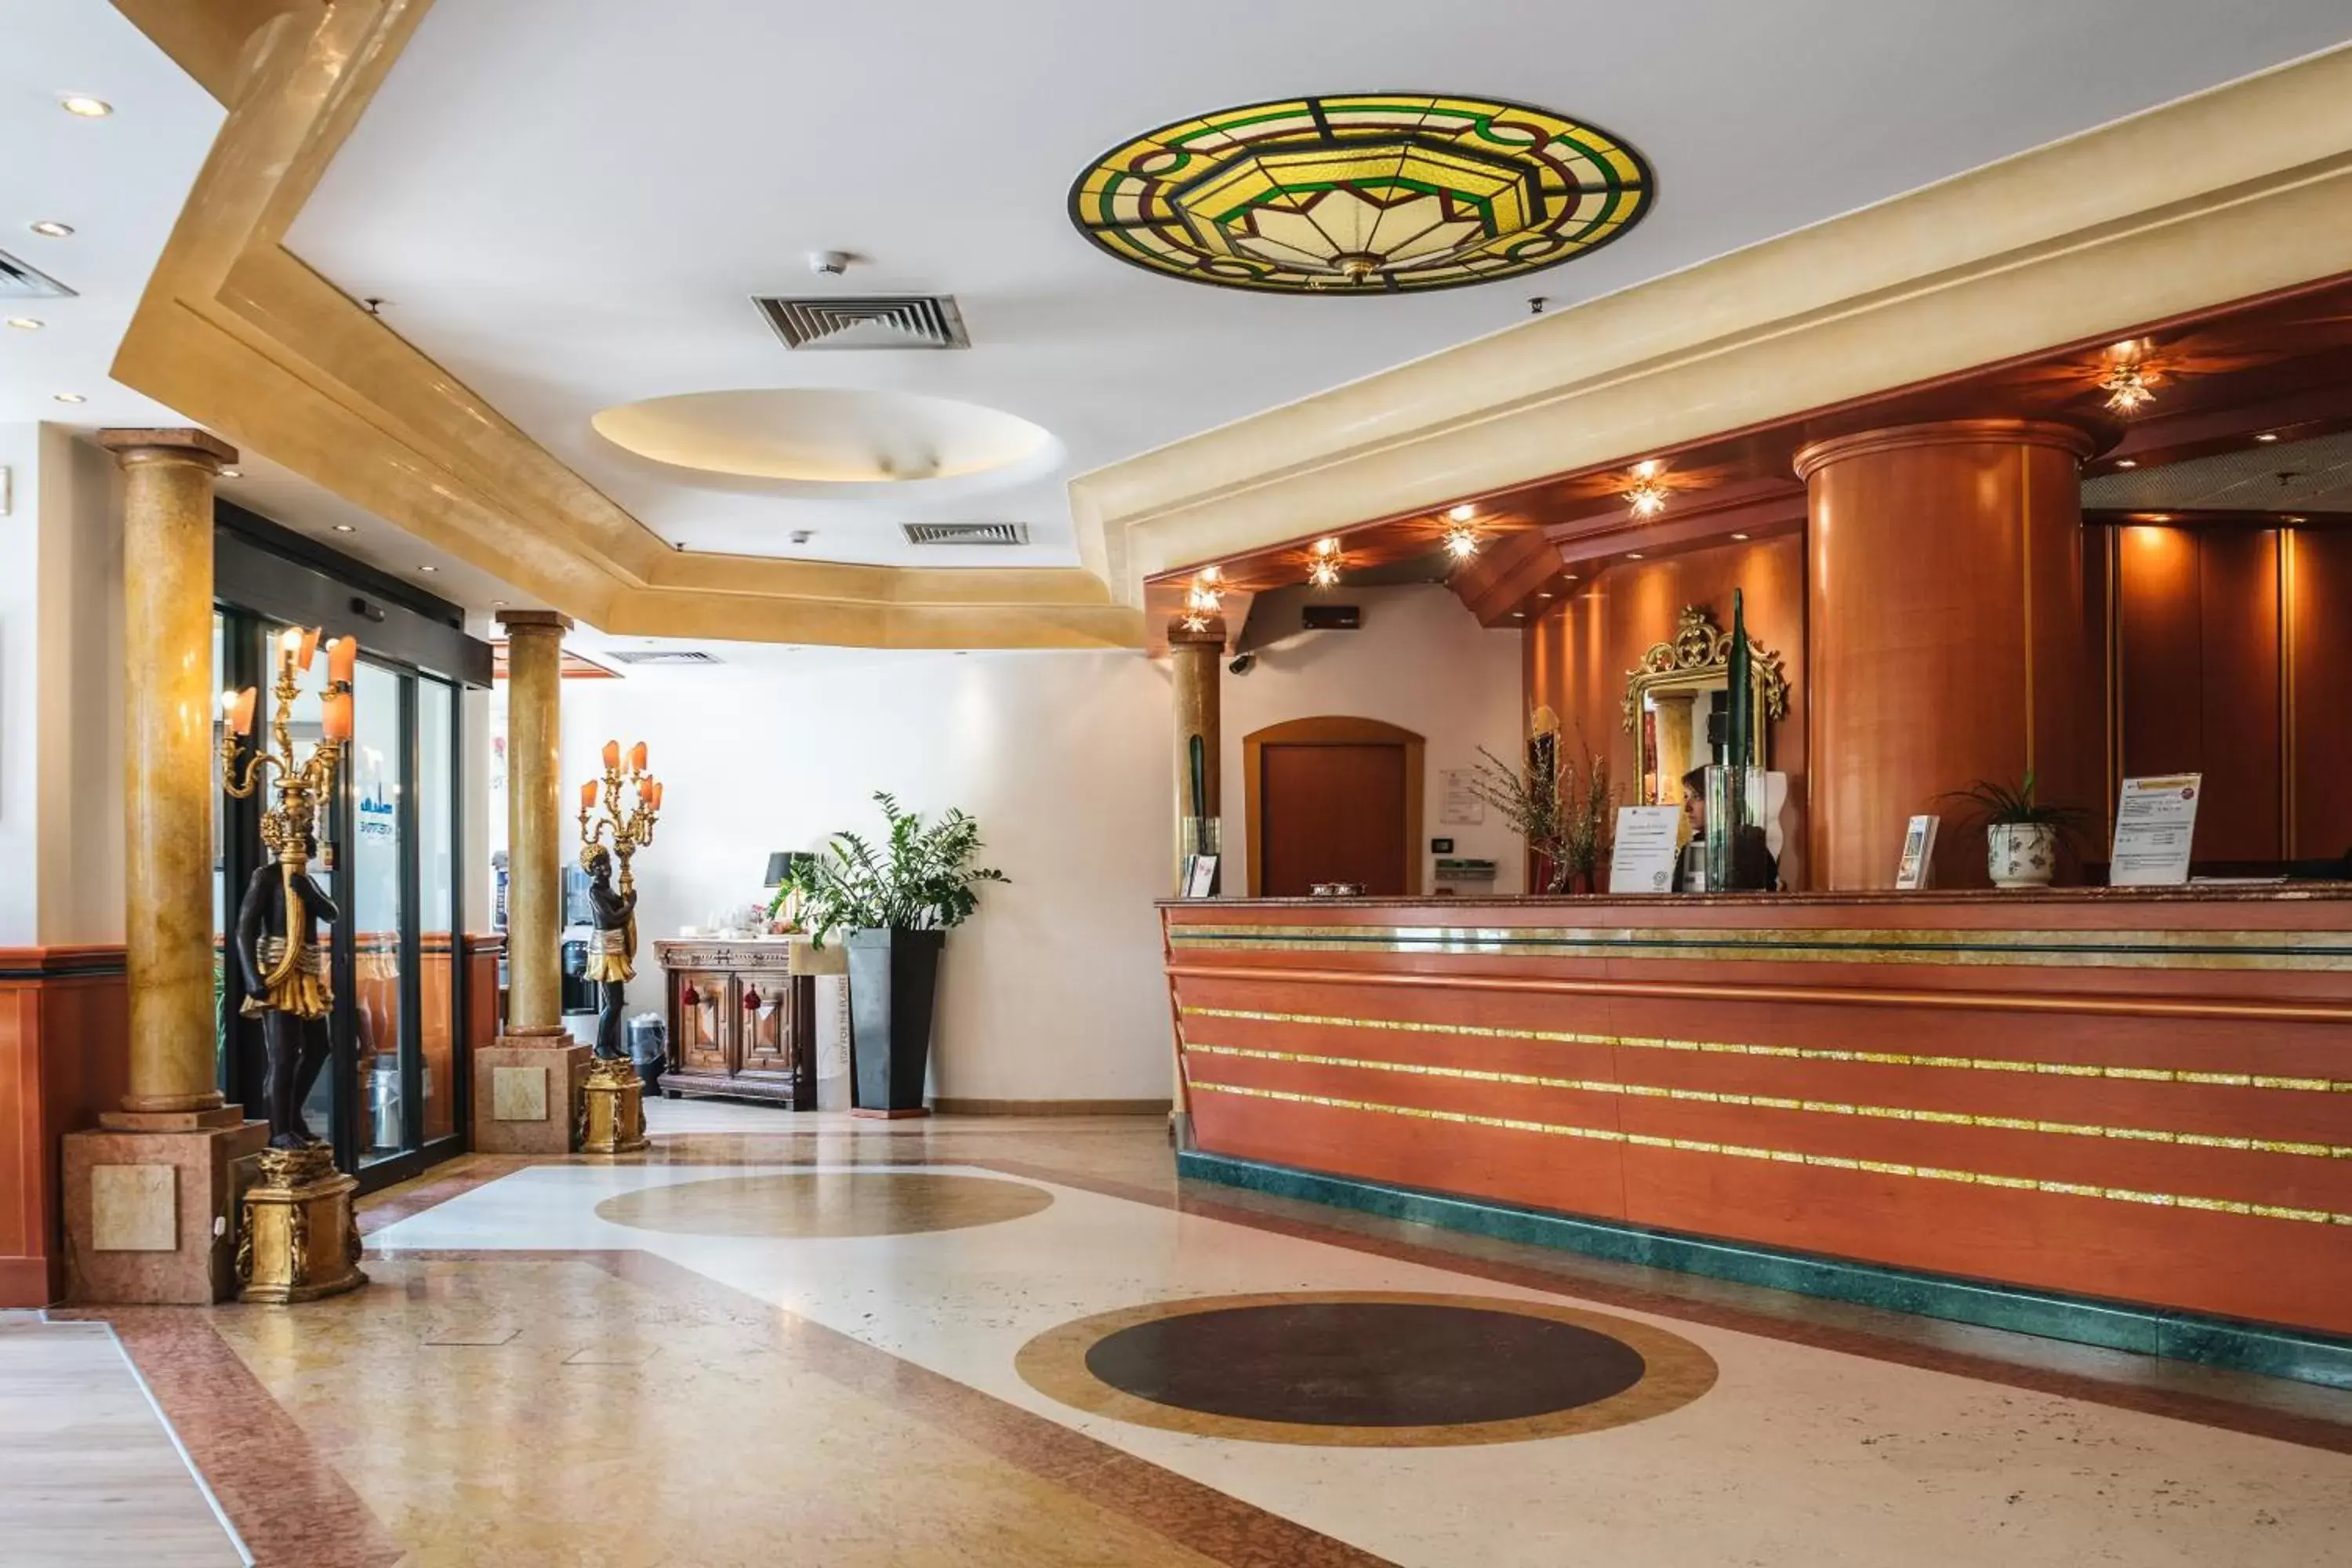 Lobby or reception, Lobby/Reception in Best Western Hotel Tritone